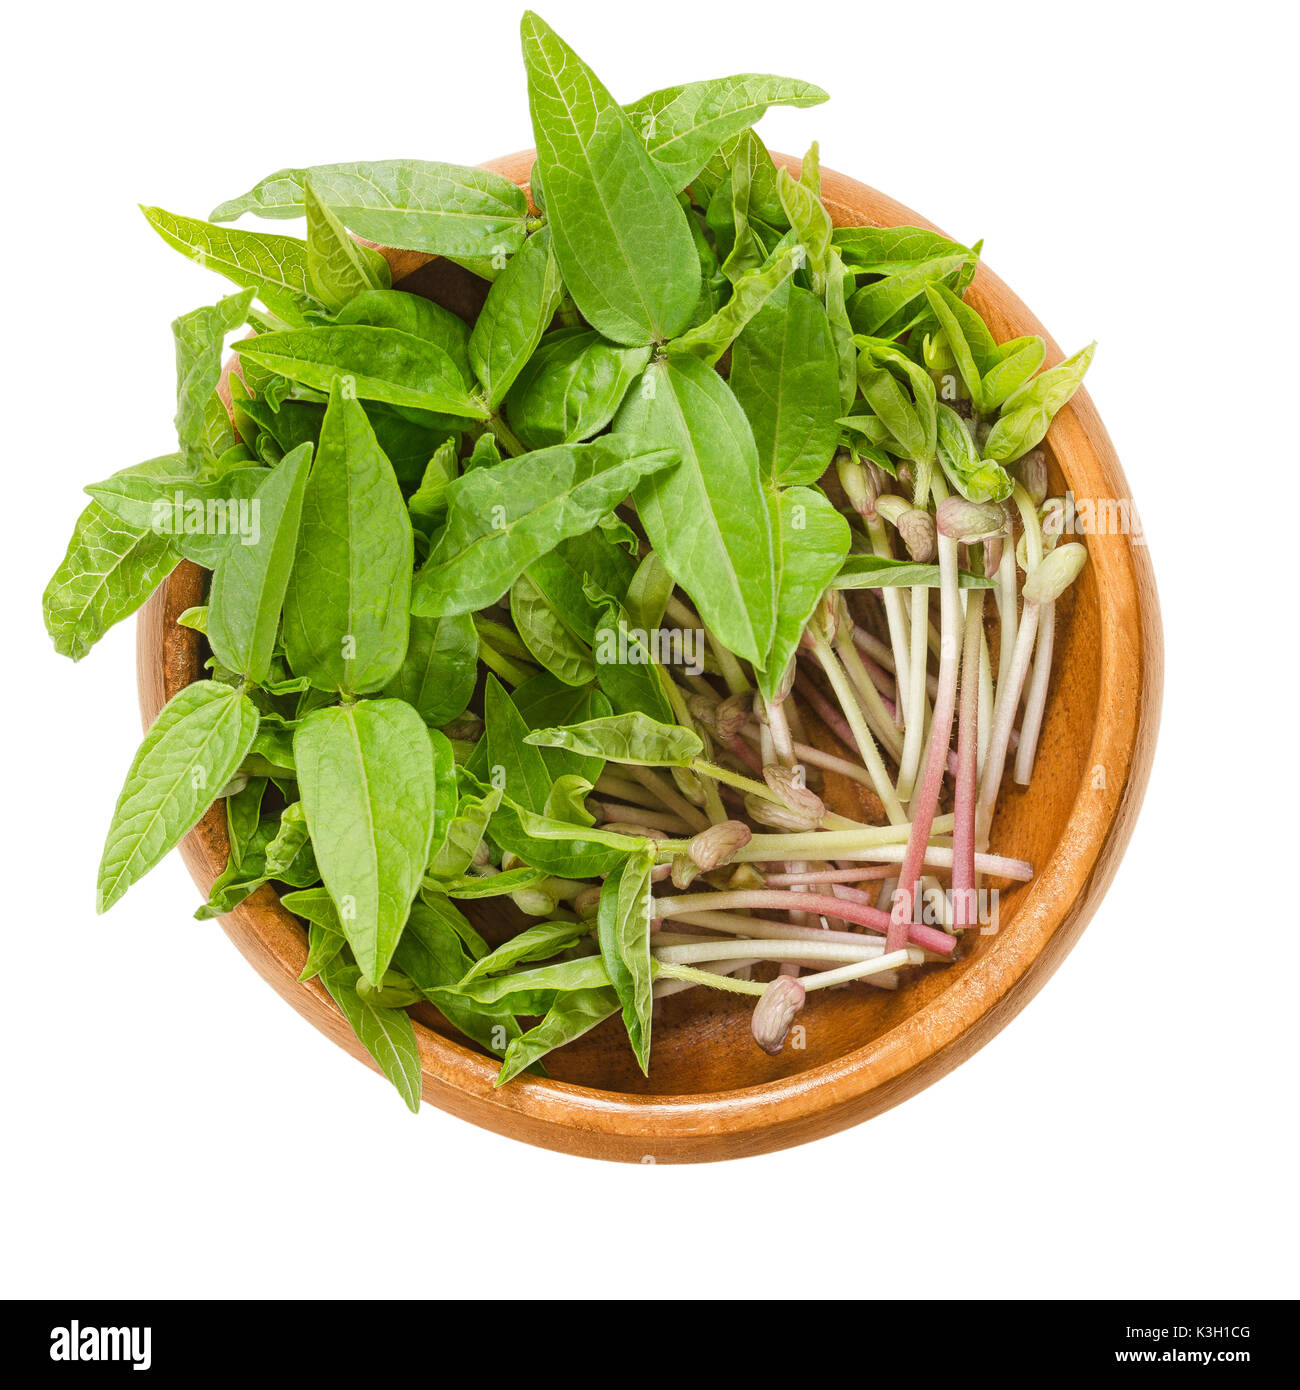 Mung bean microgreens nella ciotola di legno. Cotiledoni della Vigna radiata, chiamato anche moong bean, green gram o mung. Le piante giovani, piantine e i germogli. Foto Stock